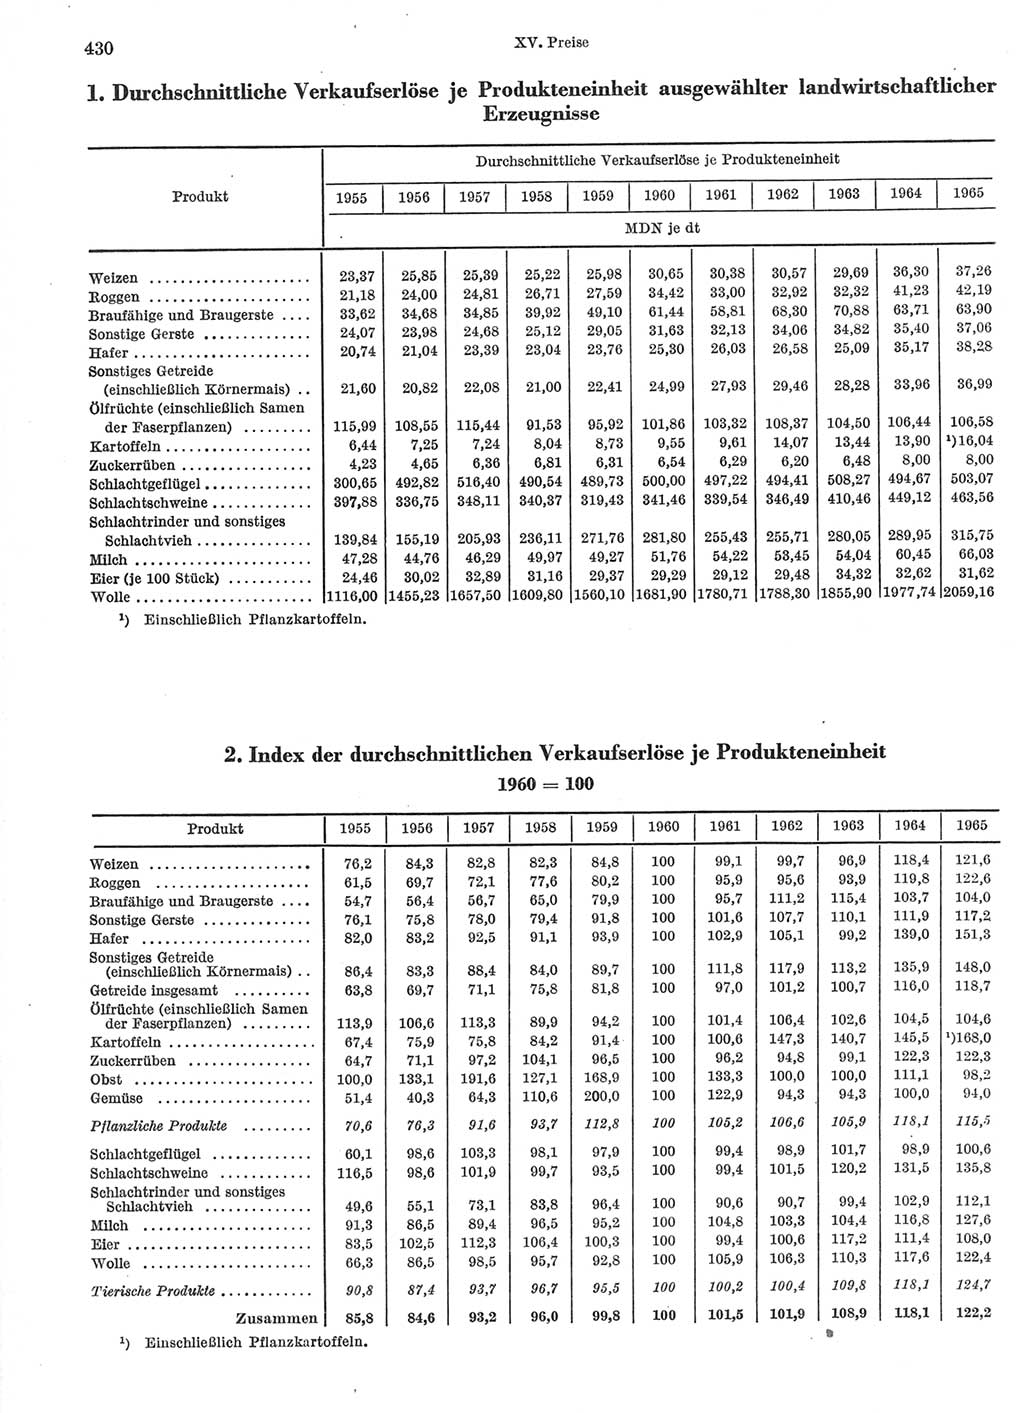 Statistisches Jahrbuch der Deutschen Demokratischen Republik (DDR) 1966, Seite 430 (Stat. Jb. DDR 1966, S. 430)